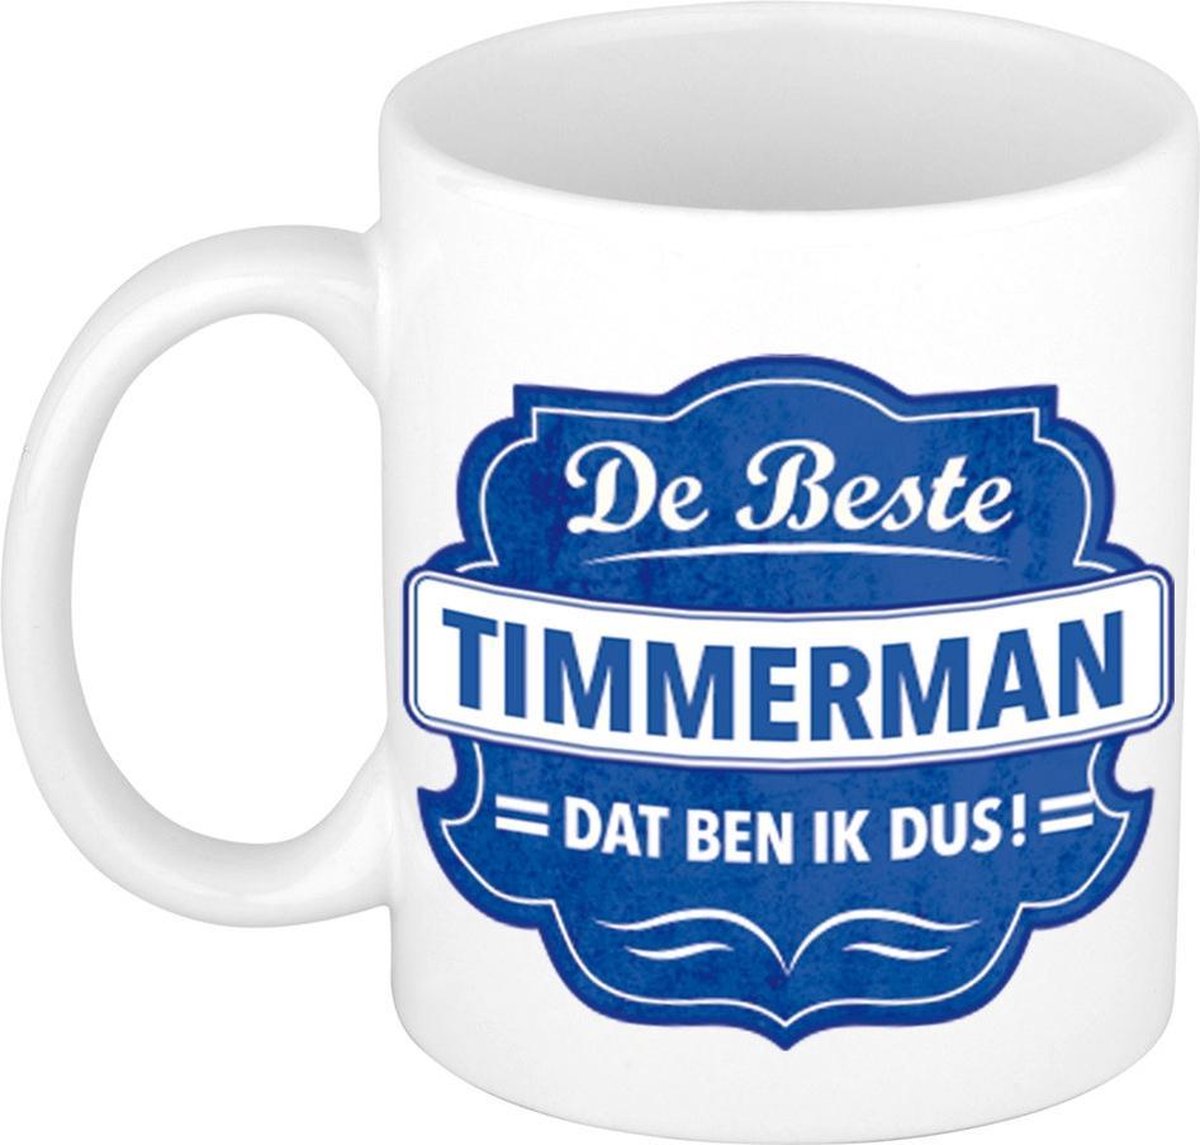 De beste timmerman cadeau koffiemok / theebeker wit met blauw embleem - 300 ml - keramiek - cadeaumok timmerman / meubelmaker / schrijnwerker